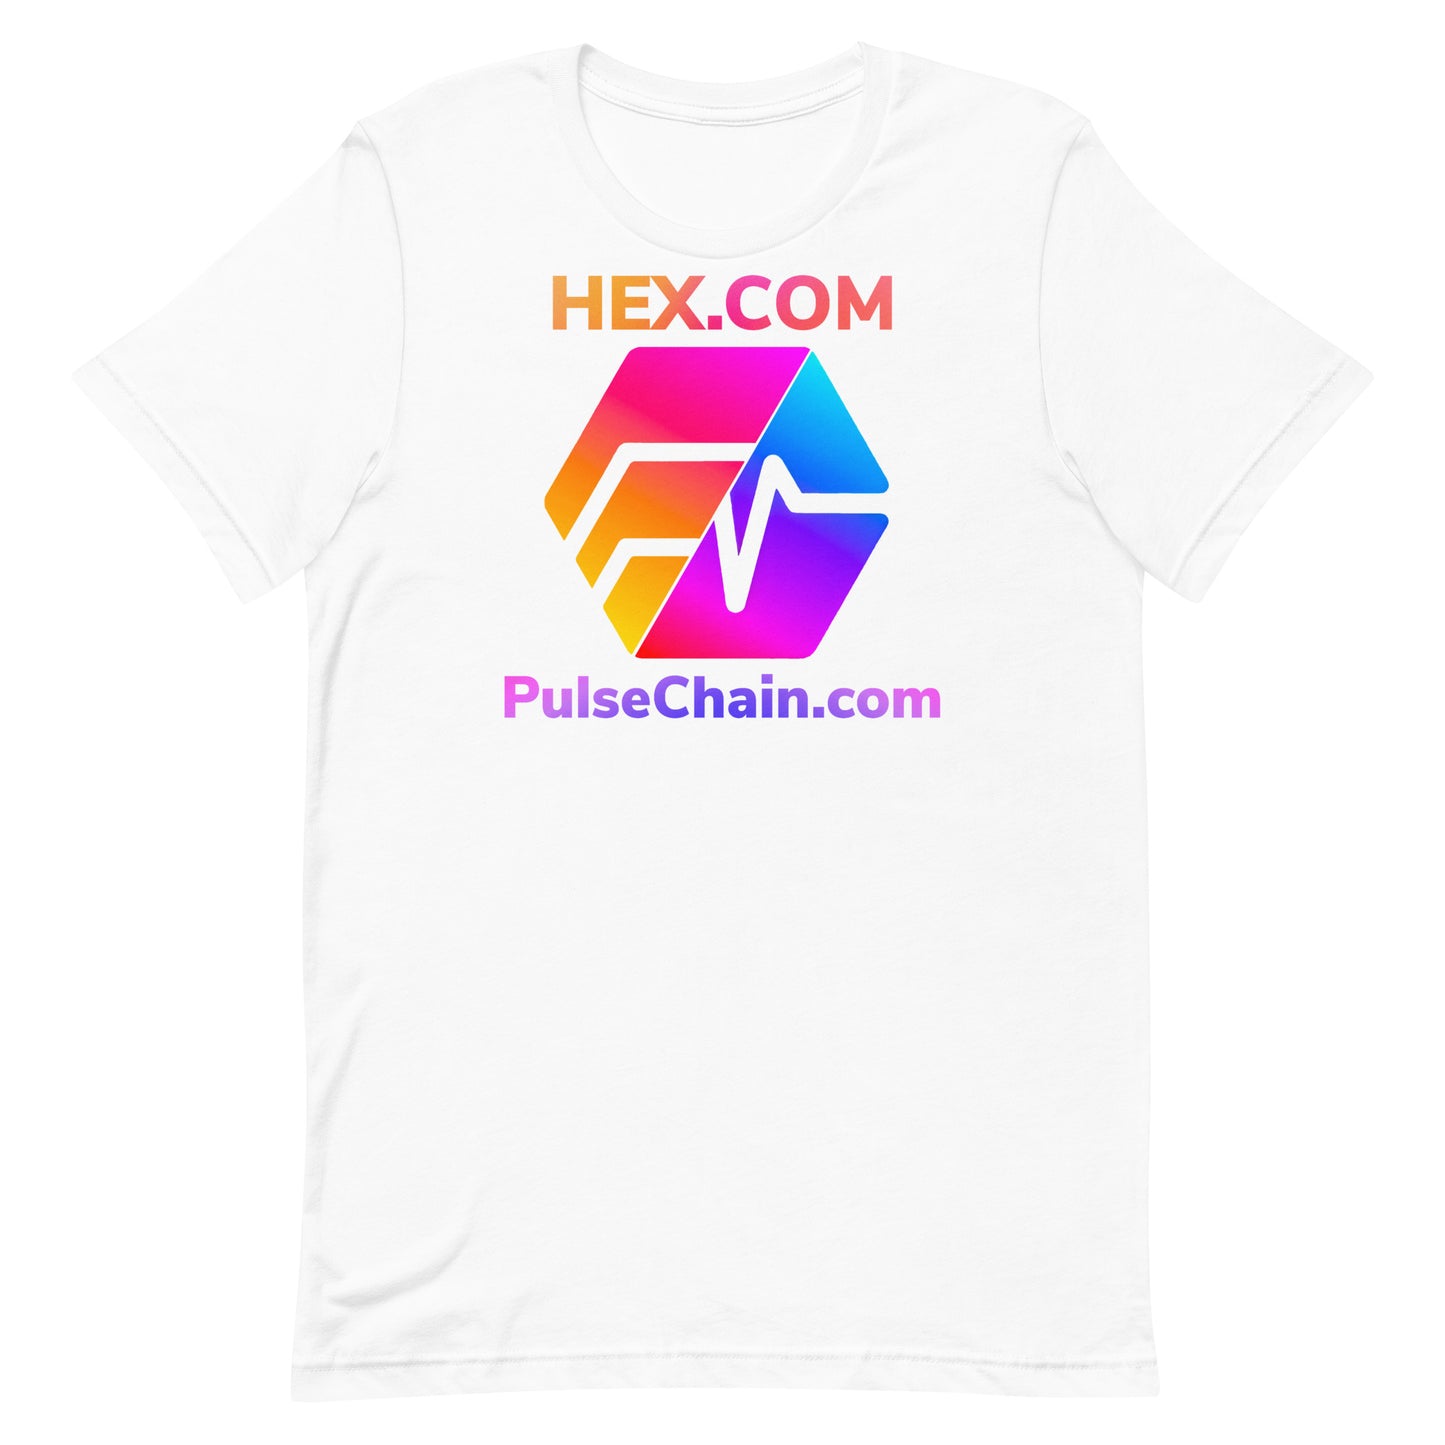 HEX.COM and PulseChain.com Unisex T-Shirt